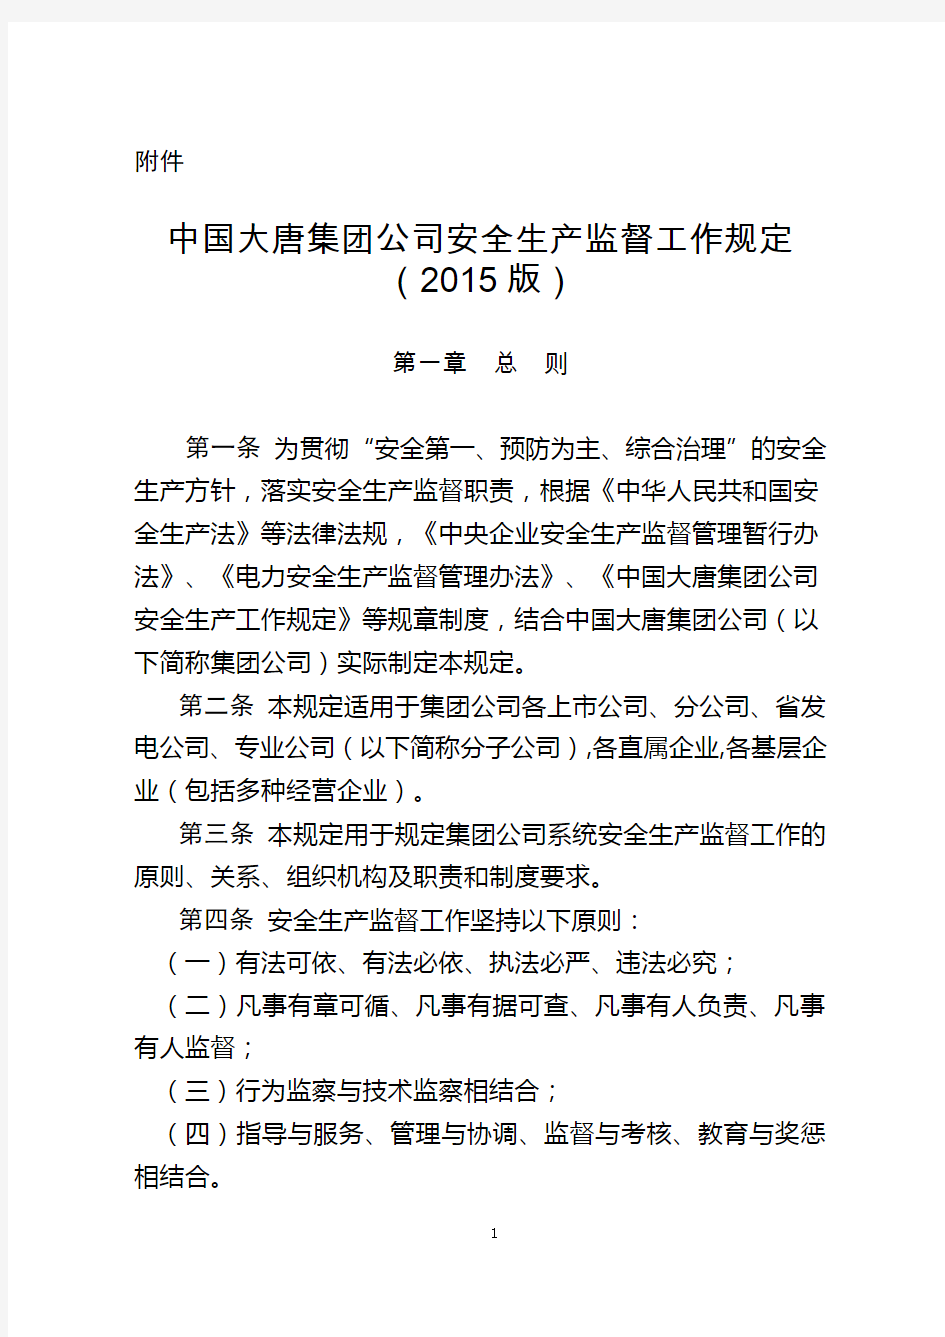 中国大唐集团公司安全生产监督工作规定(2015版)